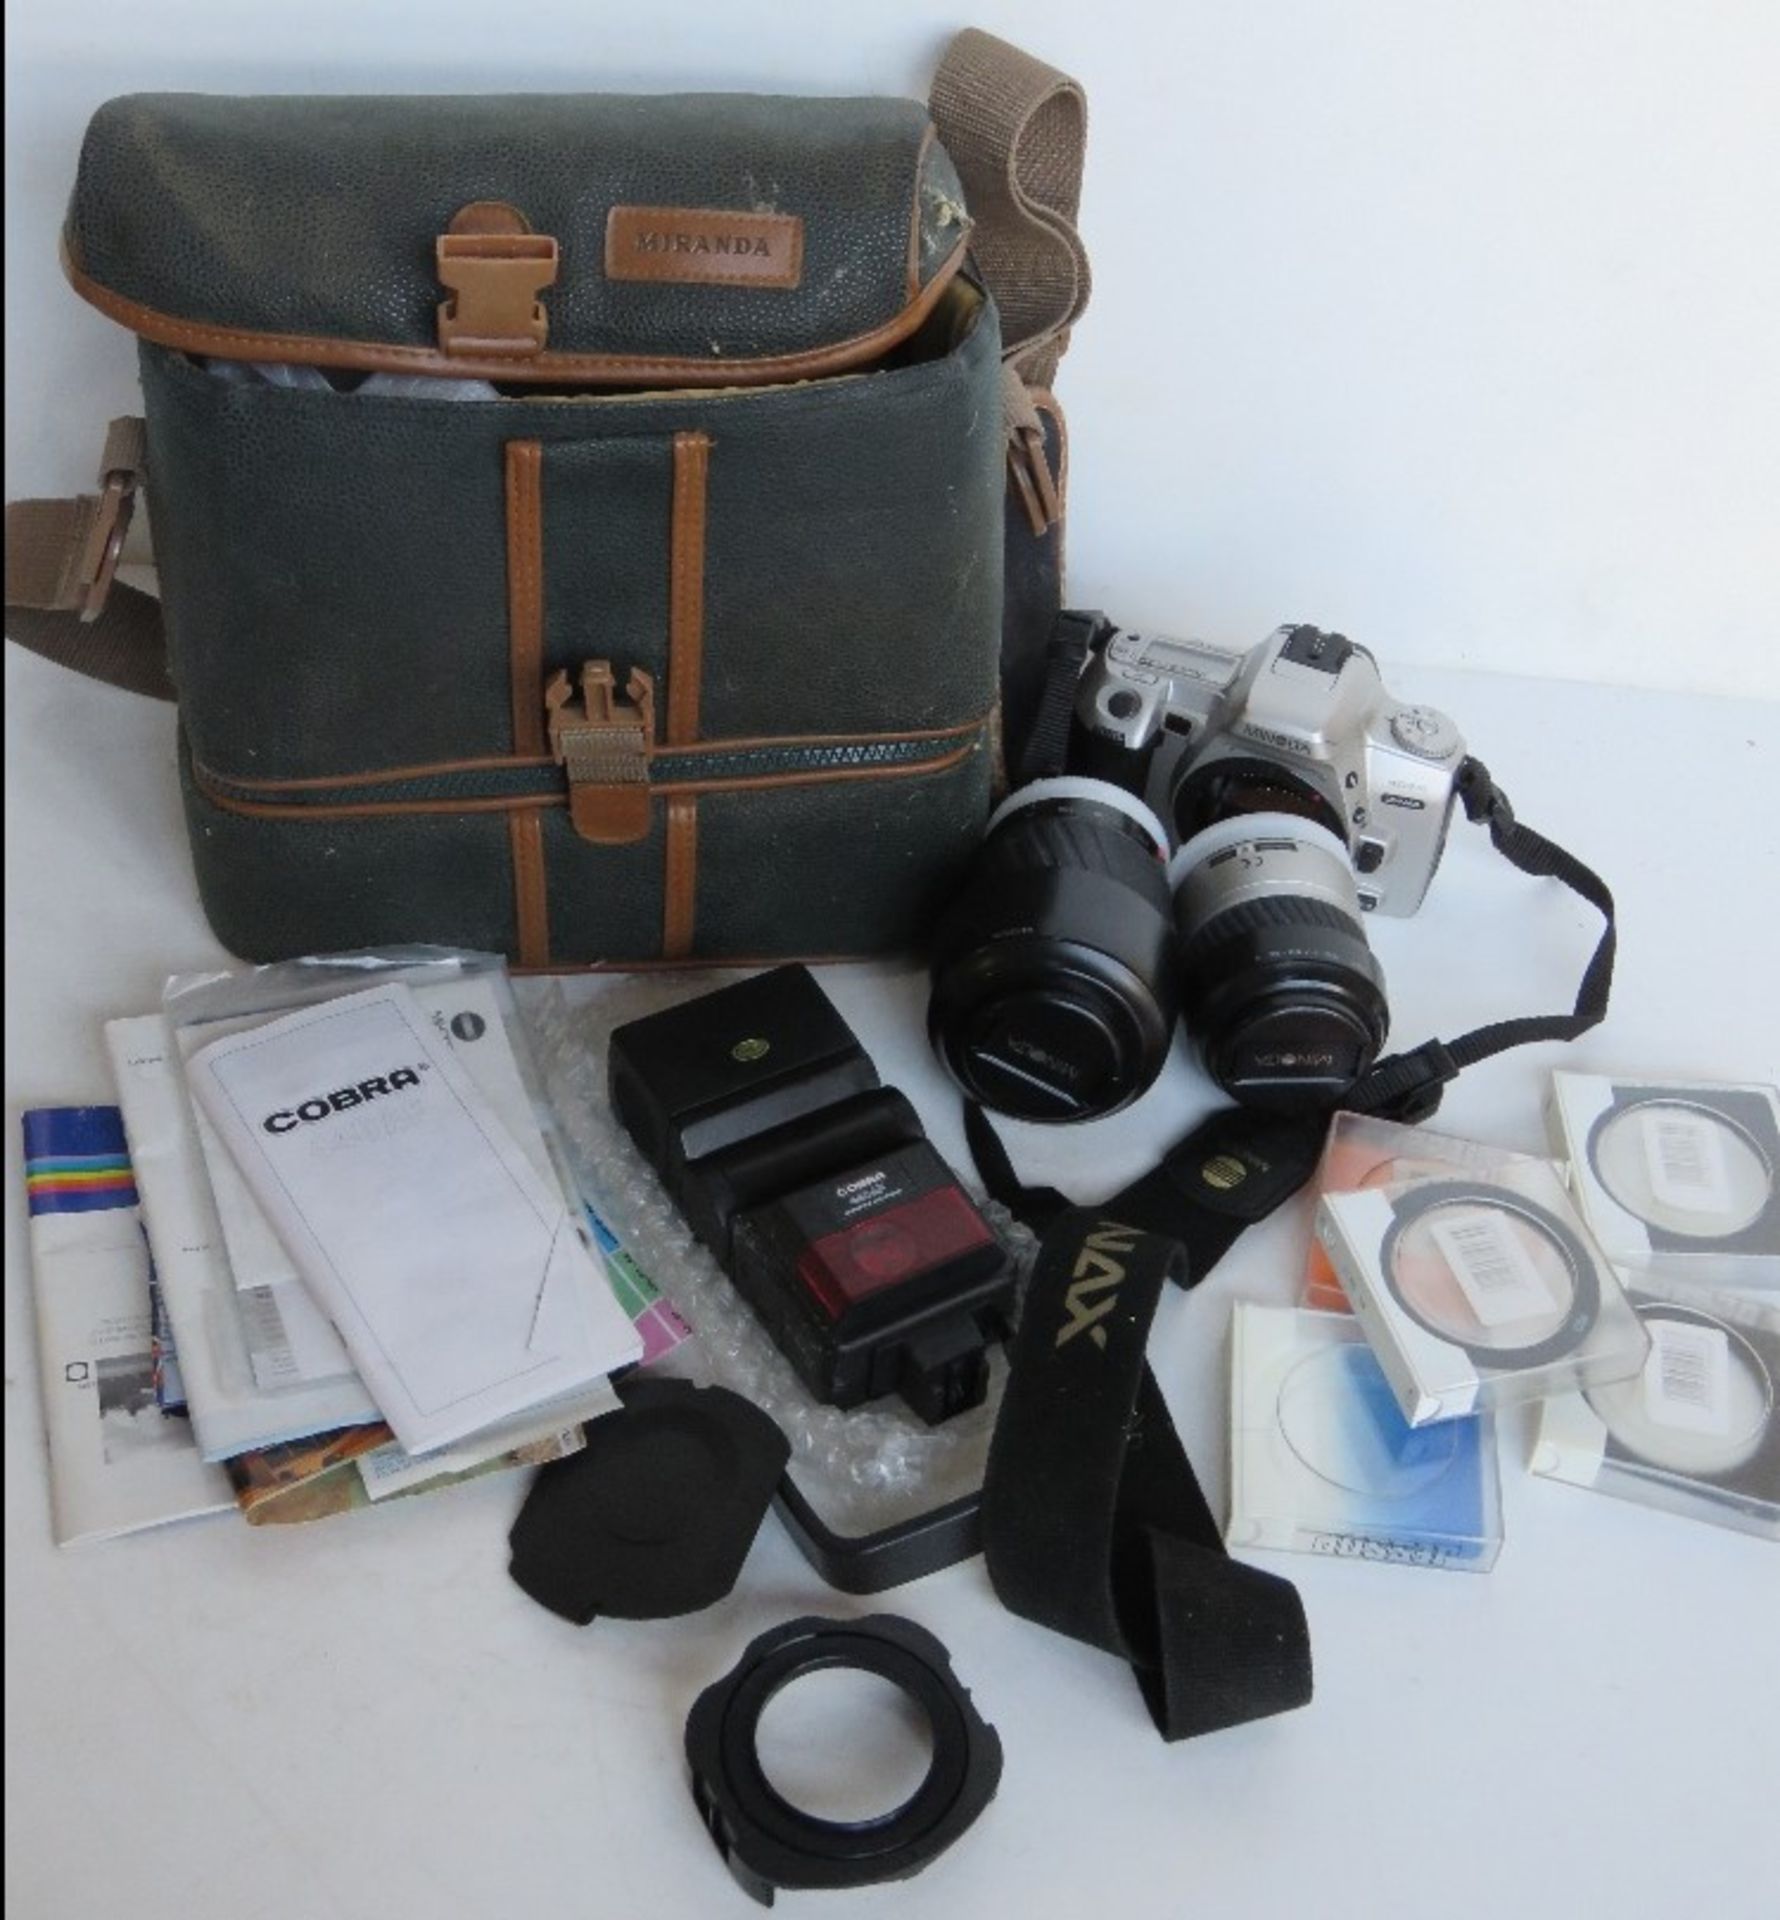 A Minolta 404SI camera with lenses, Cobra flash, etc.